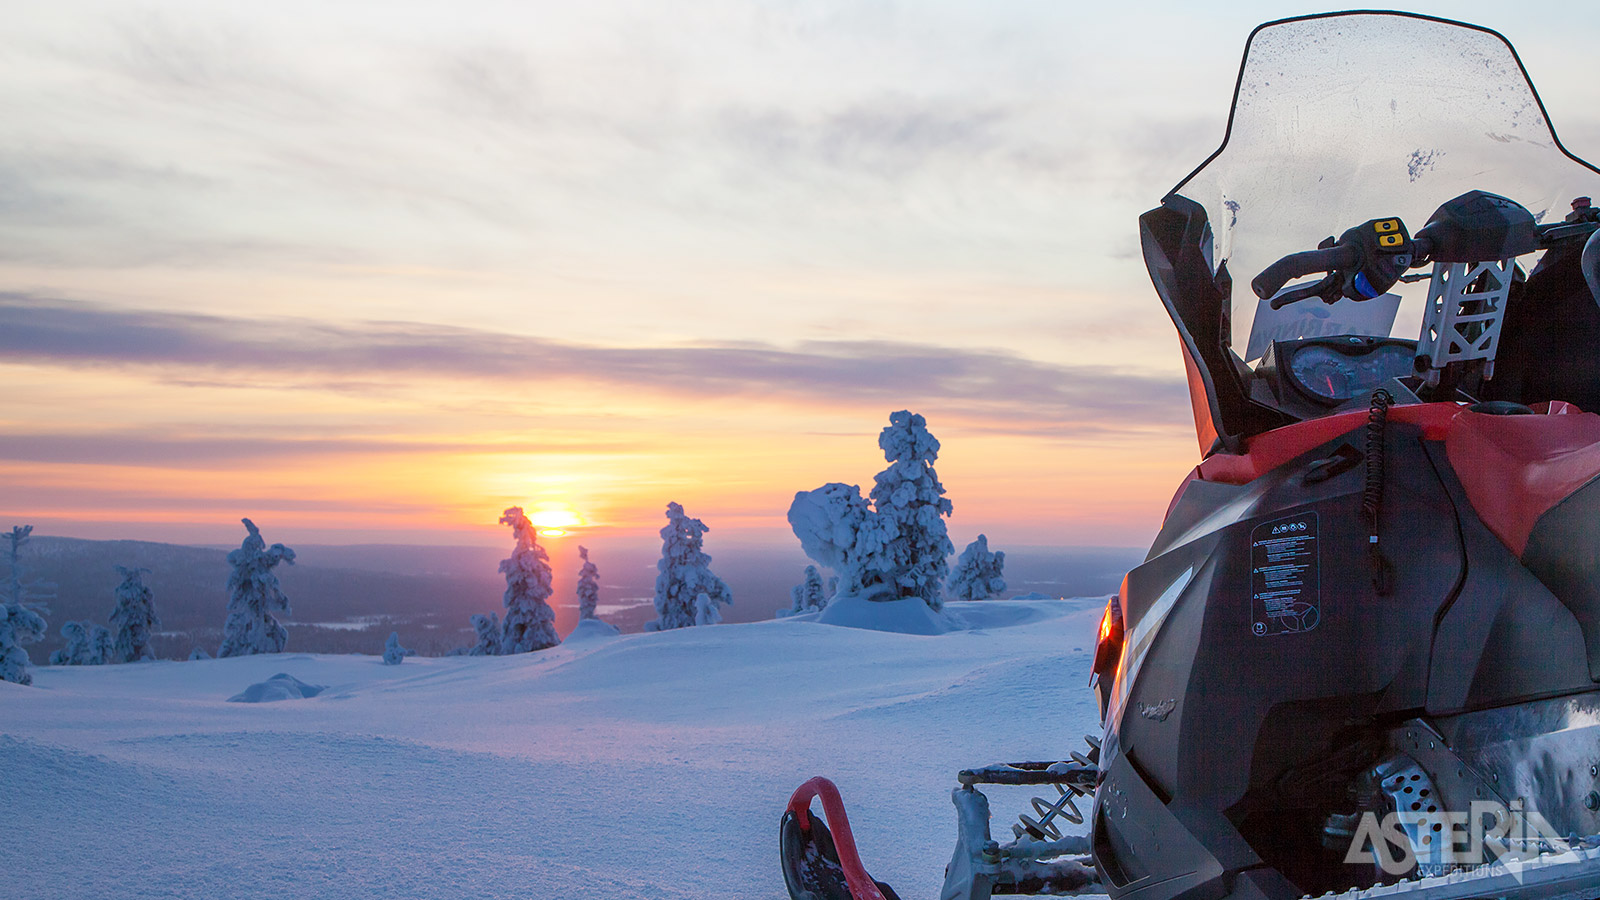 Tijdens een sneeuwscootertocht bewonder je de schitterende sneeuwlandschappen in deze regio van Finland